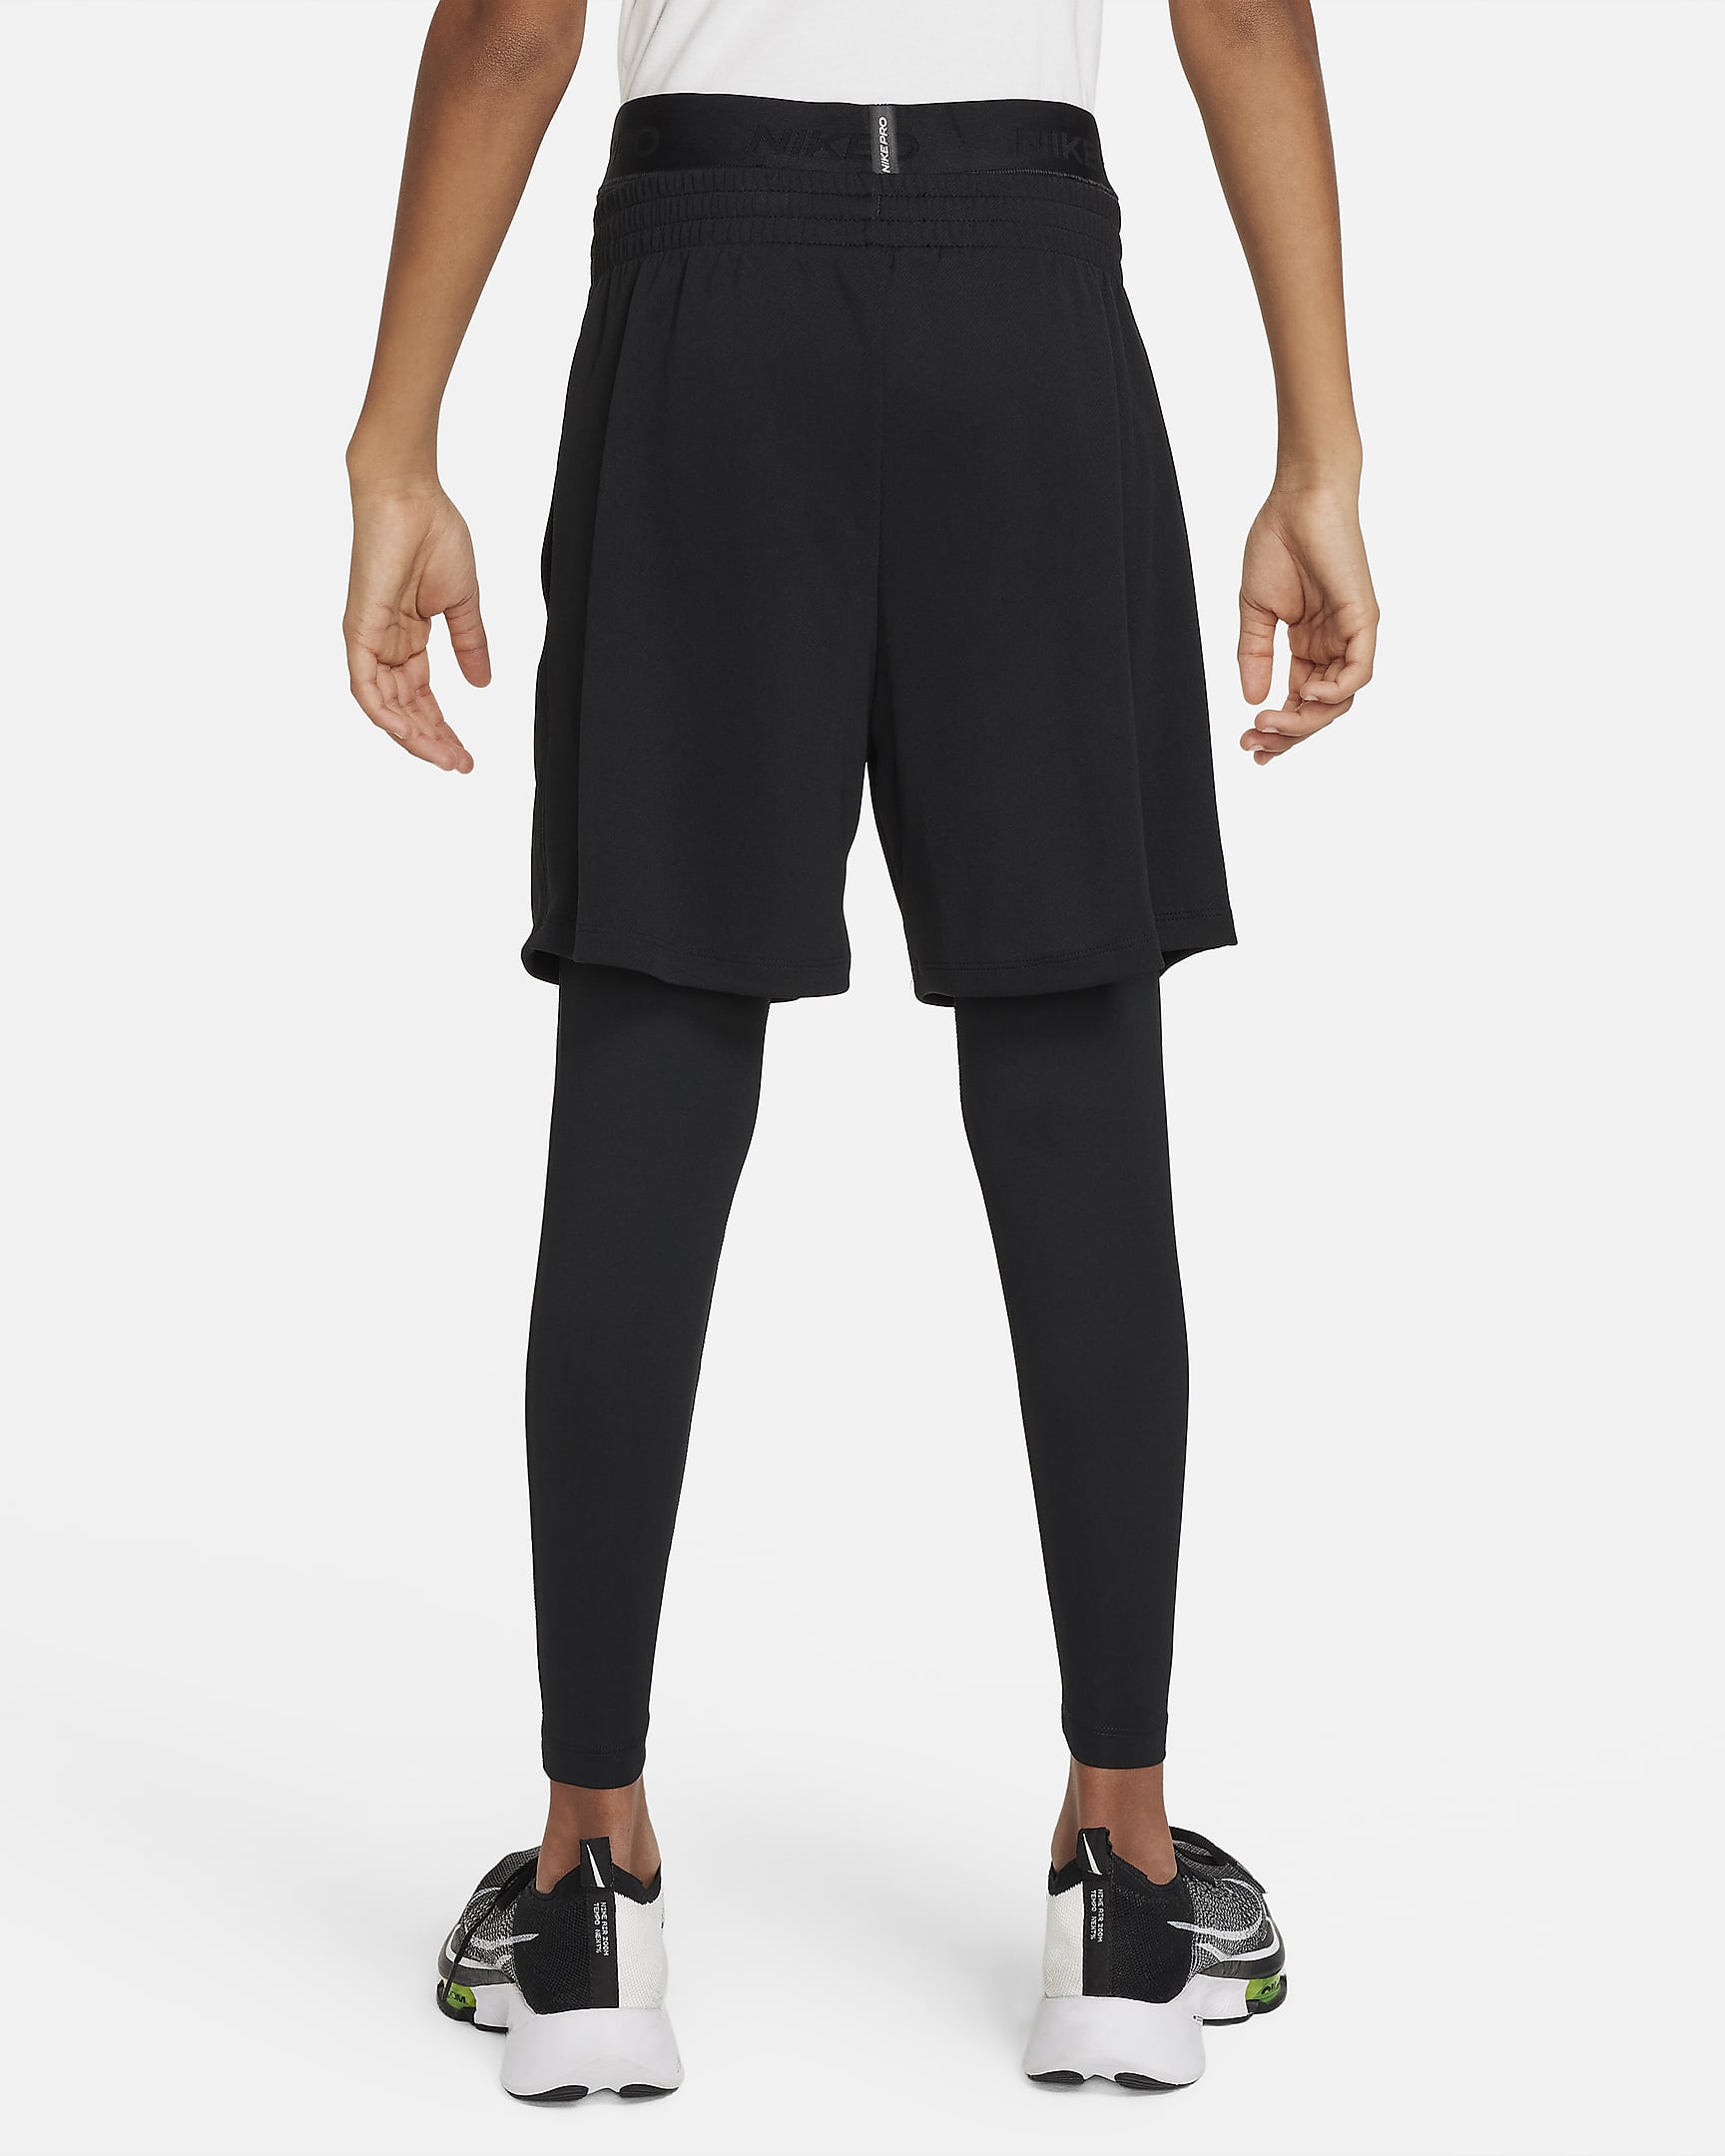 Nike Pro Dri-FIT Tights für ältere Kinder (Jungen) - Schwarz/Schwarz/Weiß